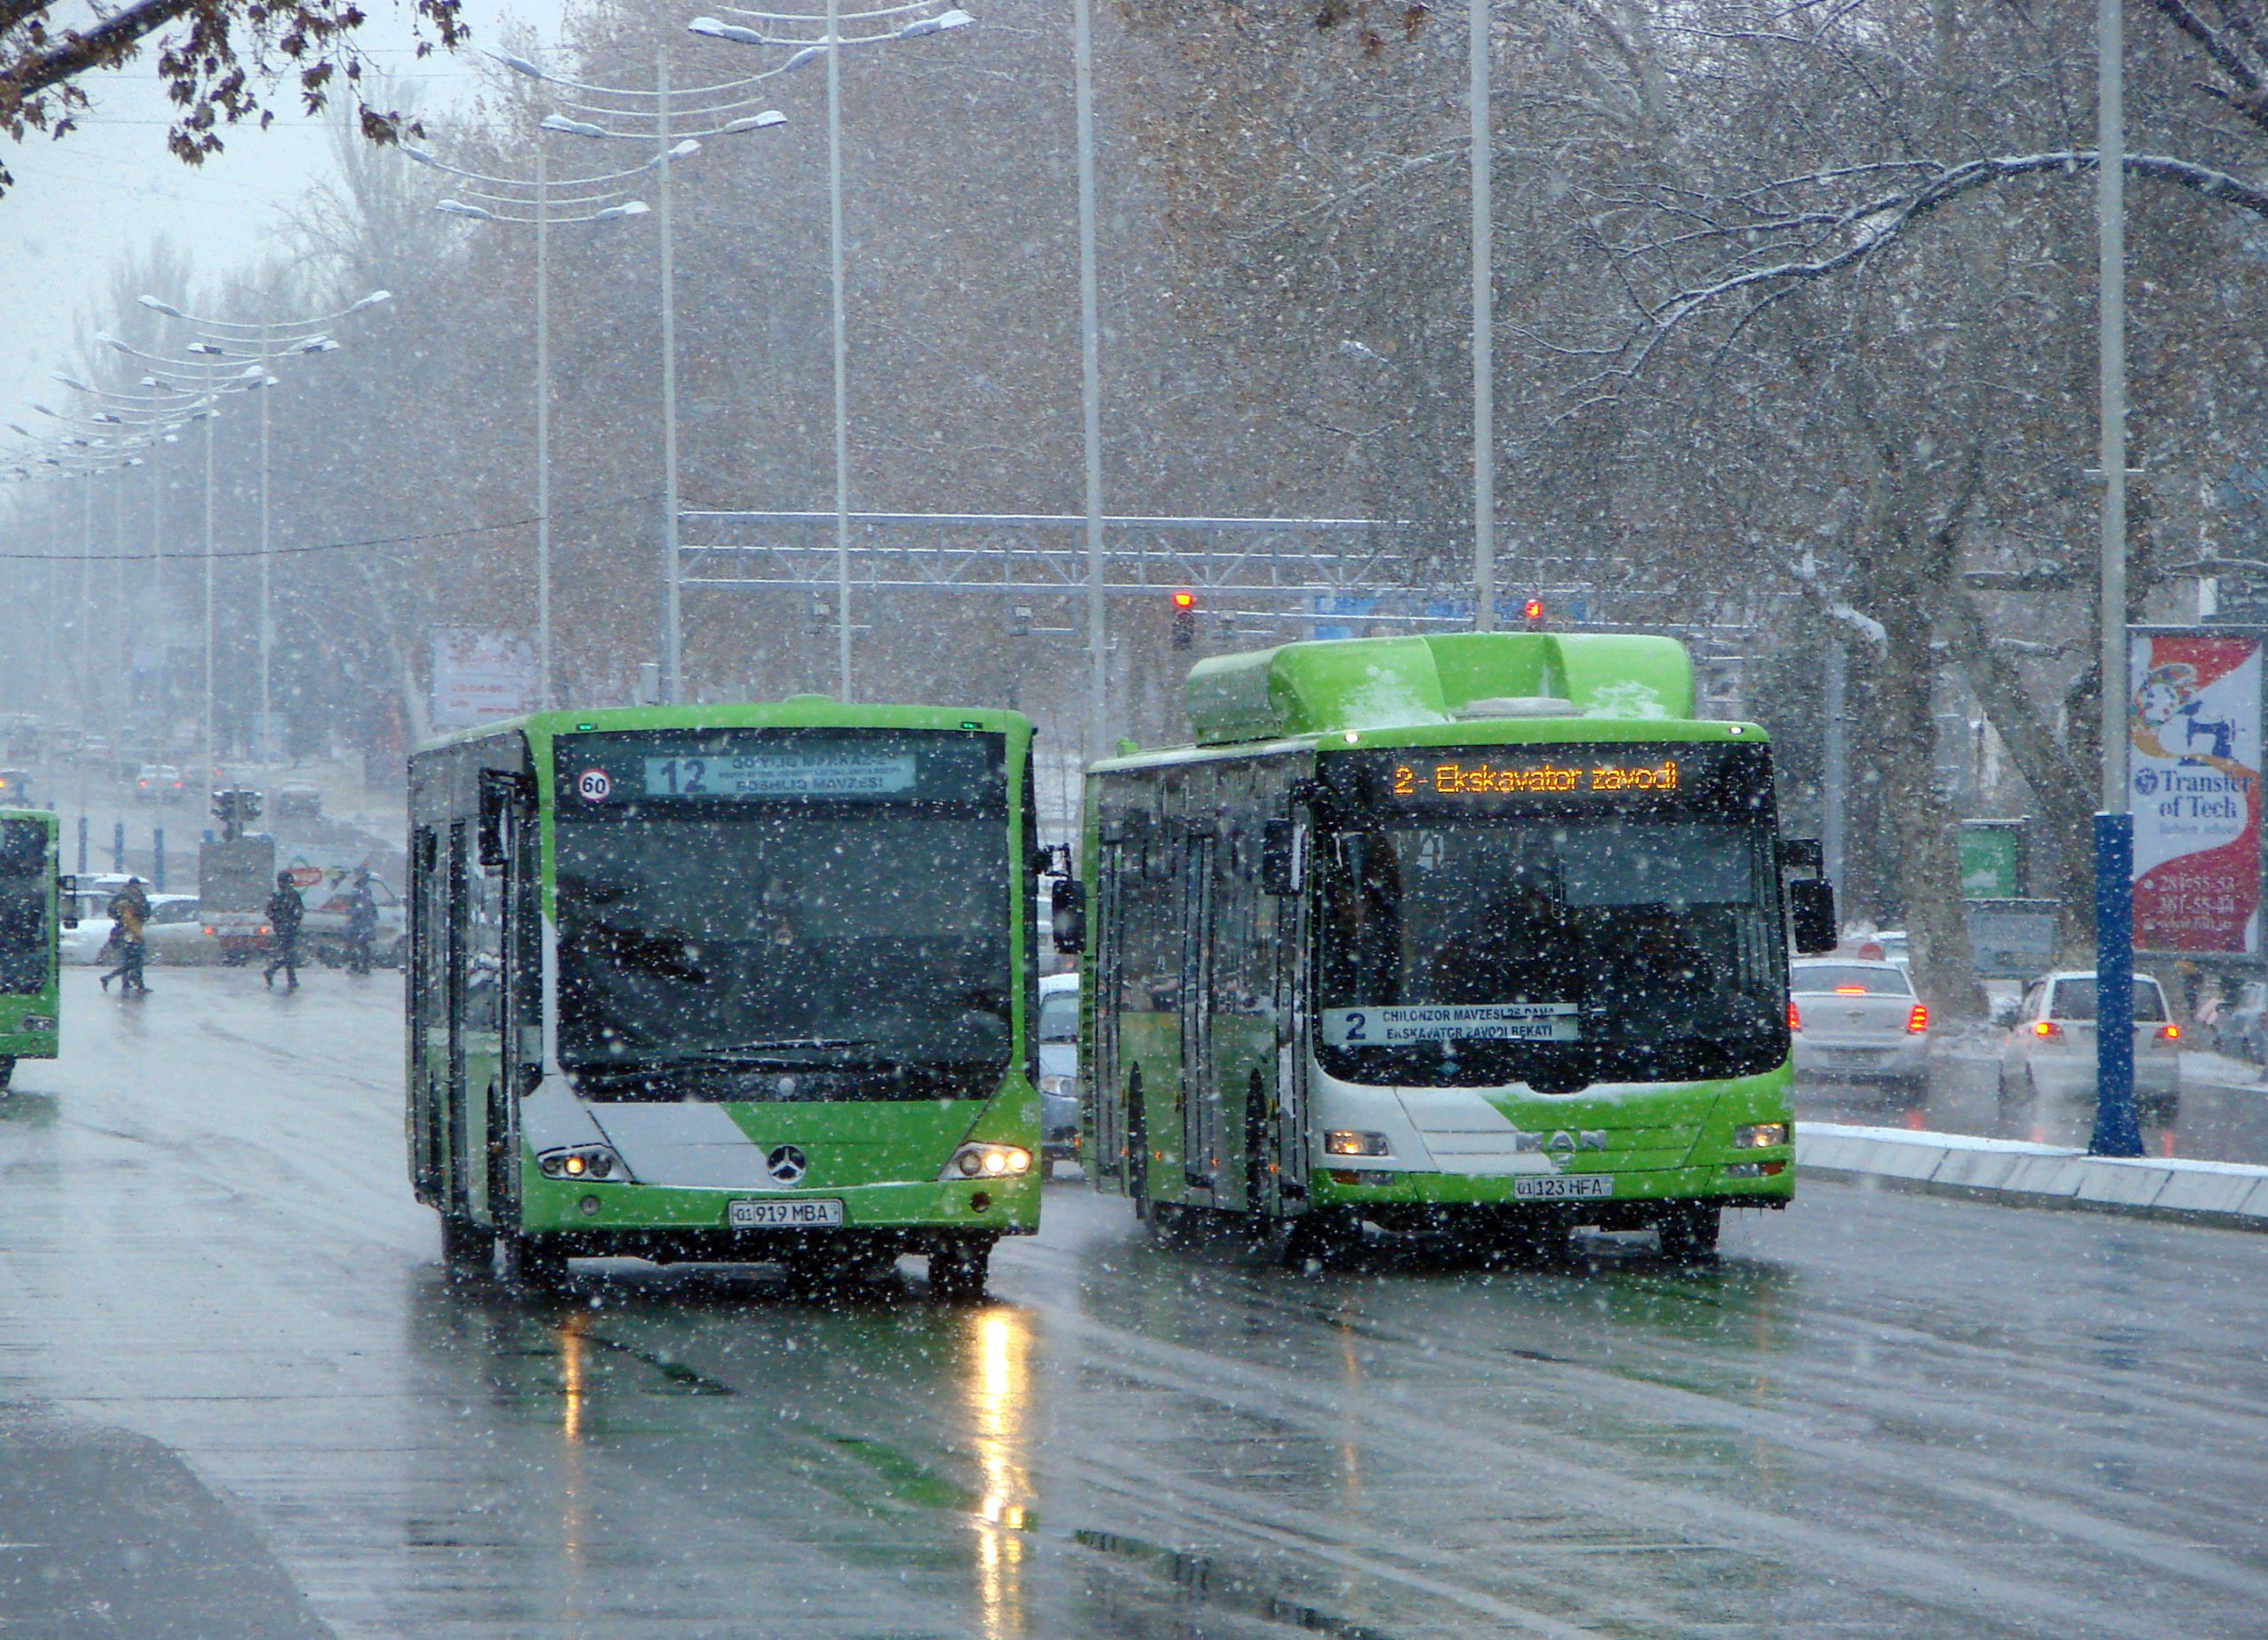 Три автобусных маршрута столицы временно поменяют свое направление